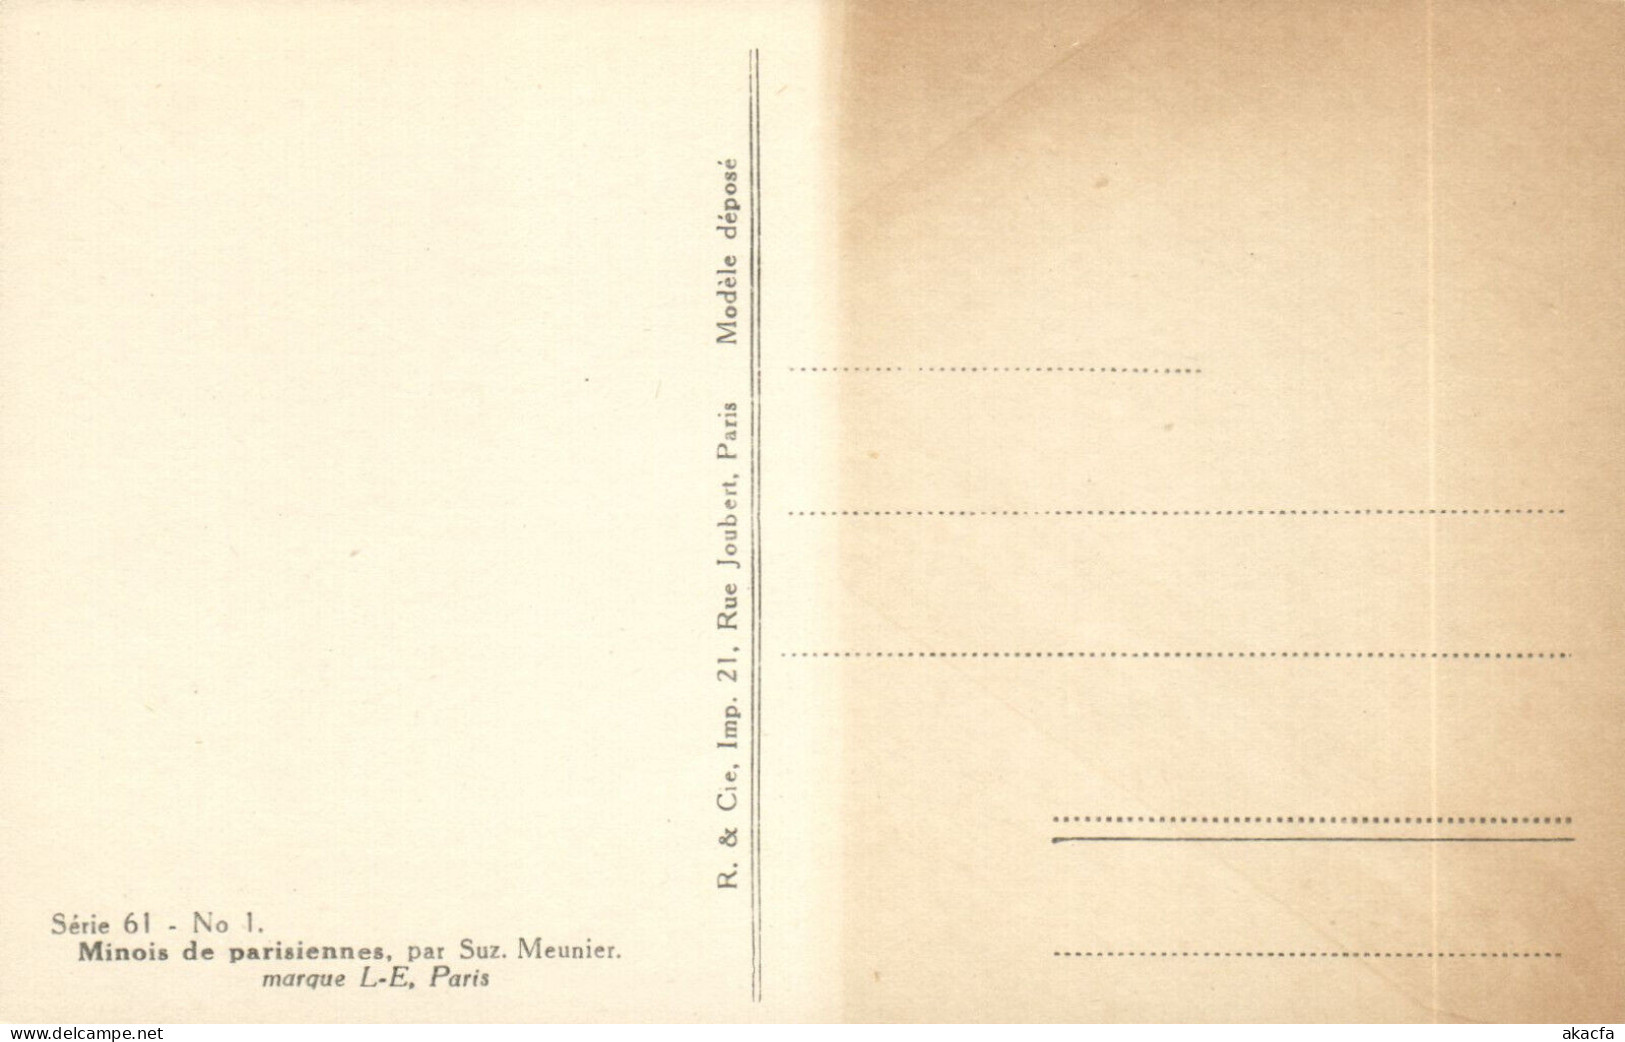 PC ARTIST SIGNED, MEUNIER, RISQUE, MINOIS PARISIENNES, Vintage Postcard (b50655) - Meunier, S.